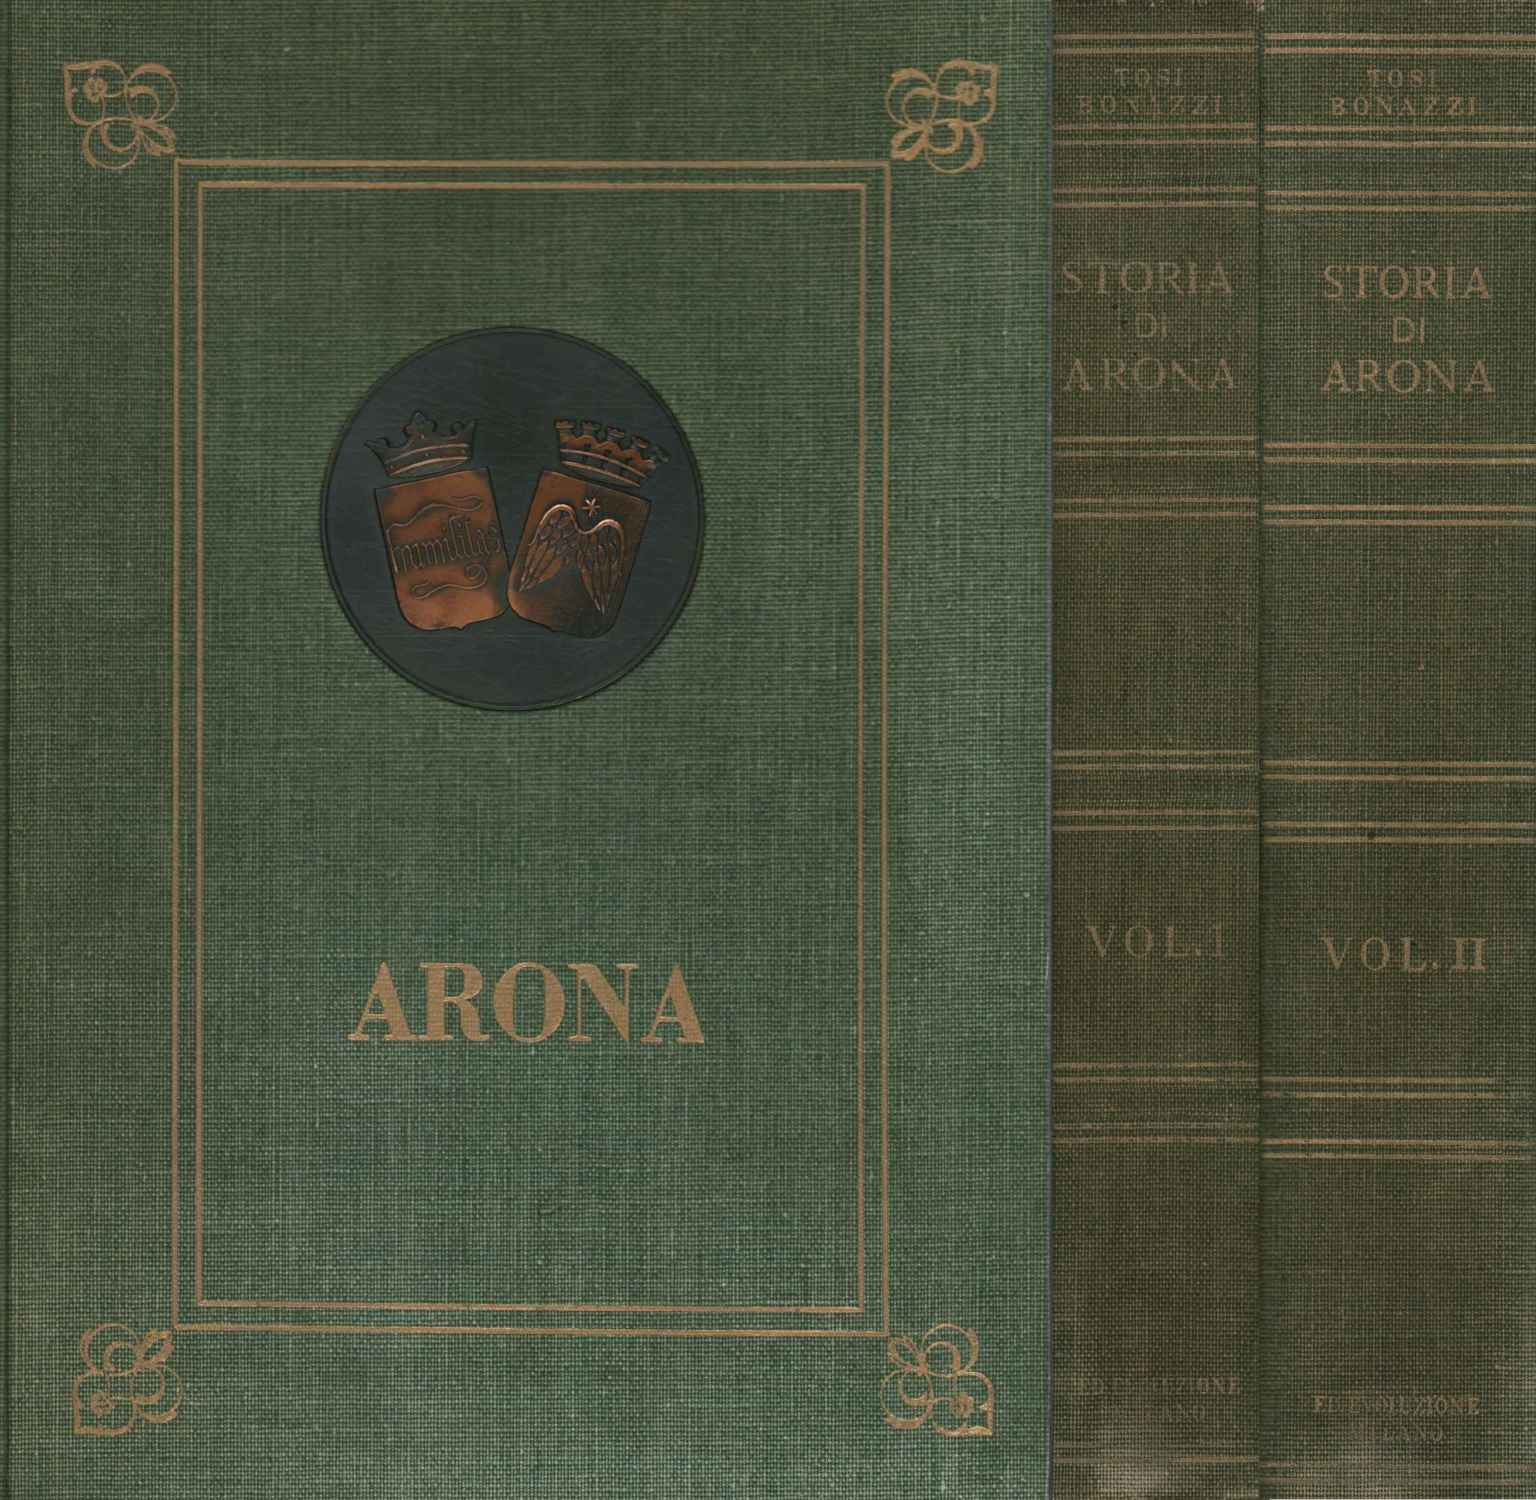 Geschichte von Arona (2 Bände)